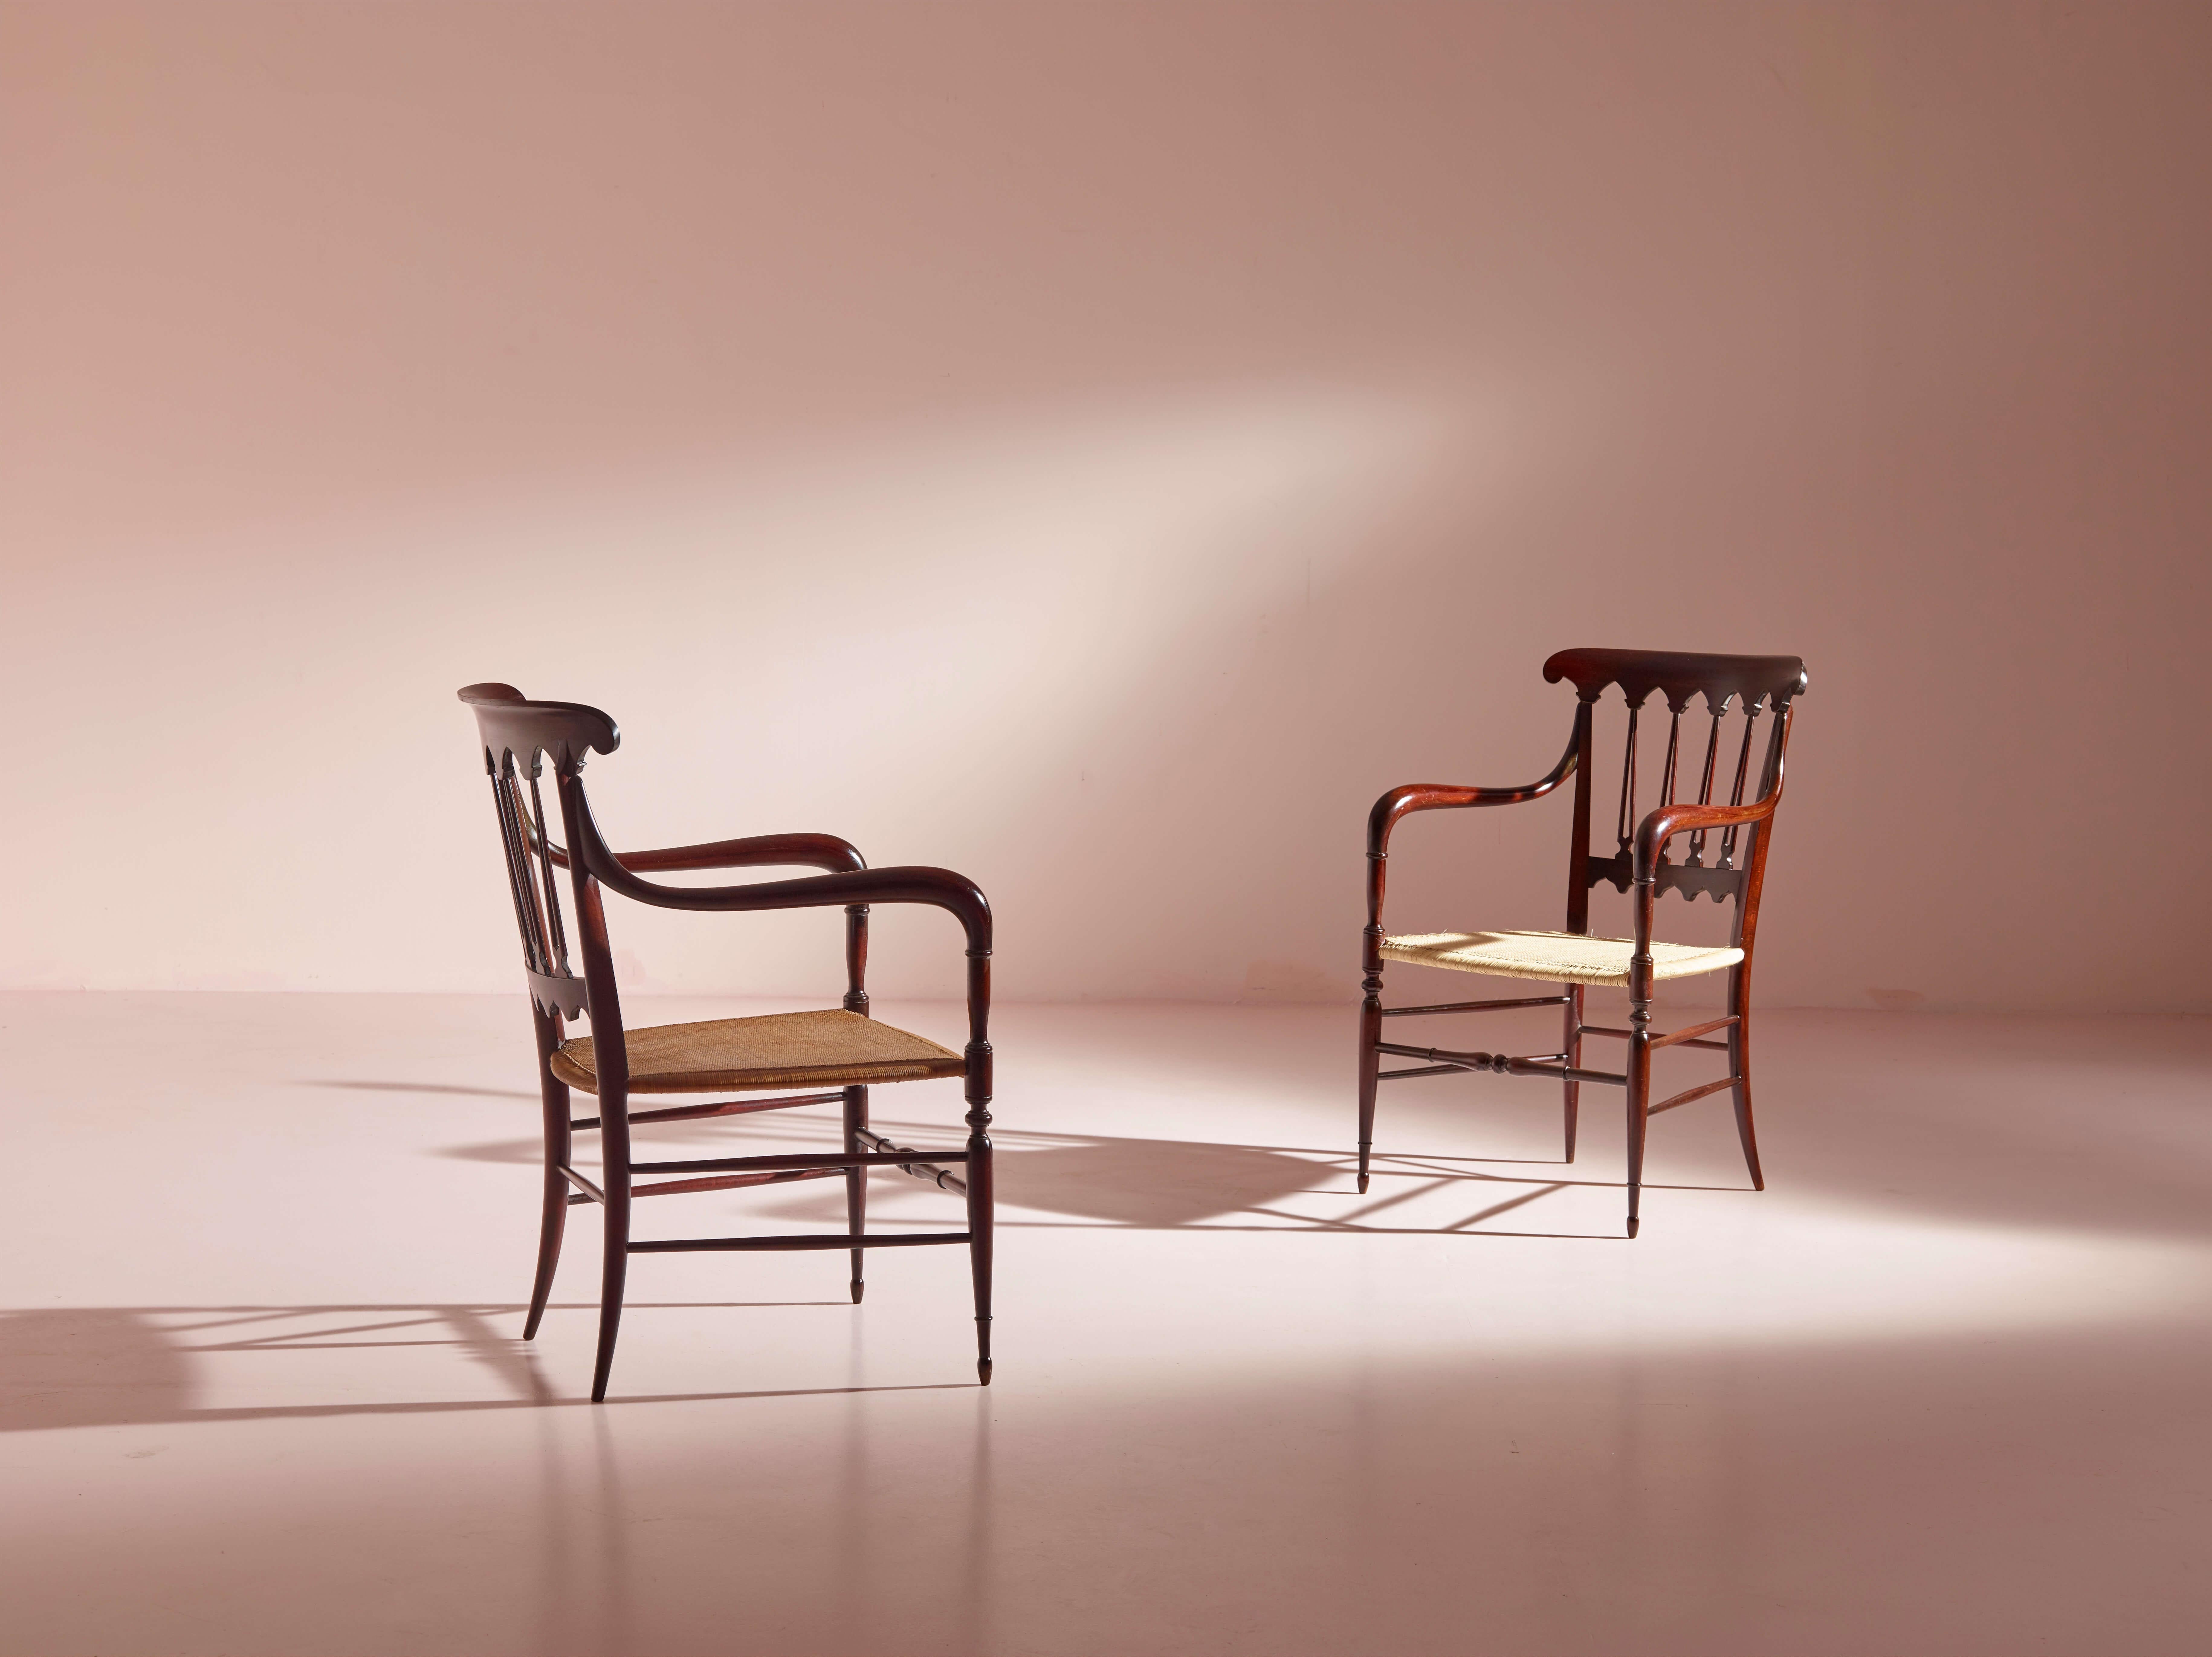 Un élégant ensemble de fauteuils, fabriqué par Colombo Sanguineti en Italie dans les années 1950, illustre l'exceptionnel savoir-faire artisanal de l'ébéniste de Chiavari.

Connues sous le nom de modèle 